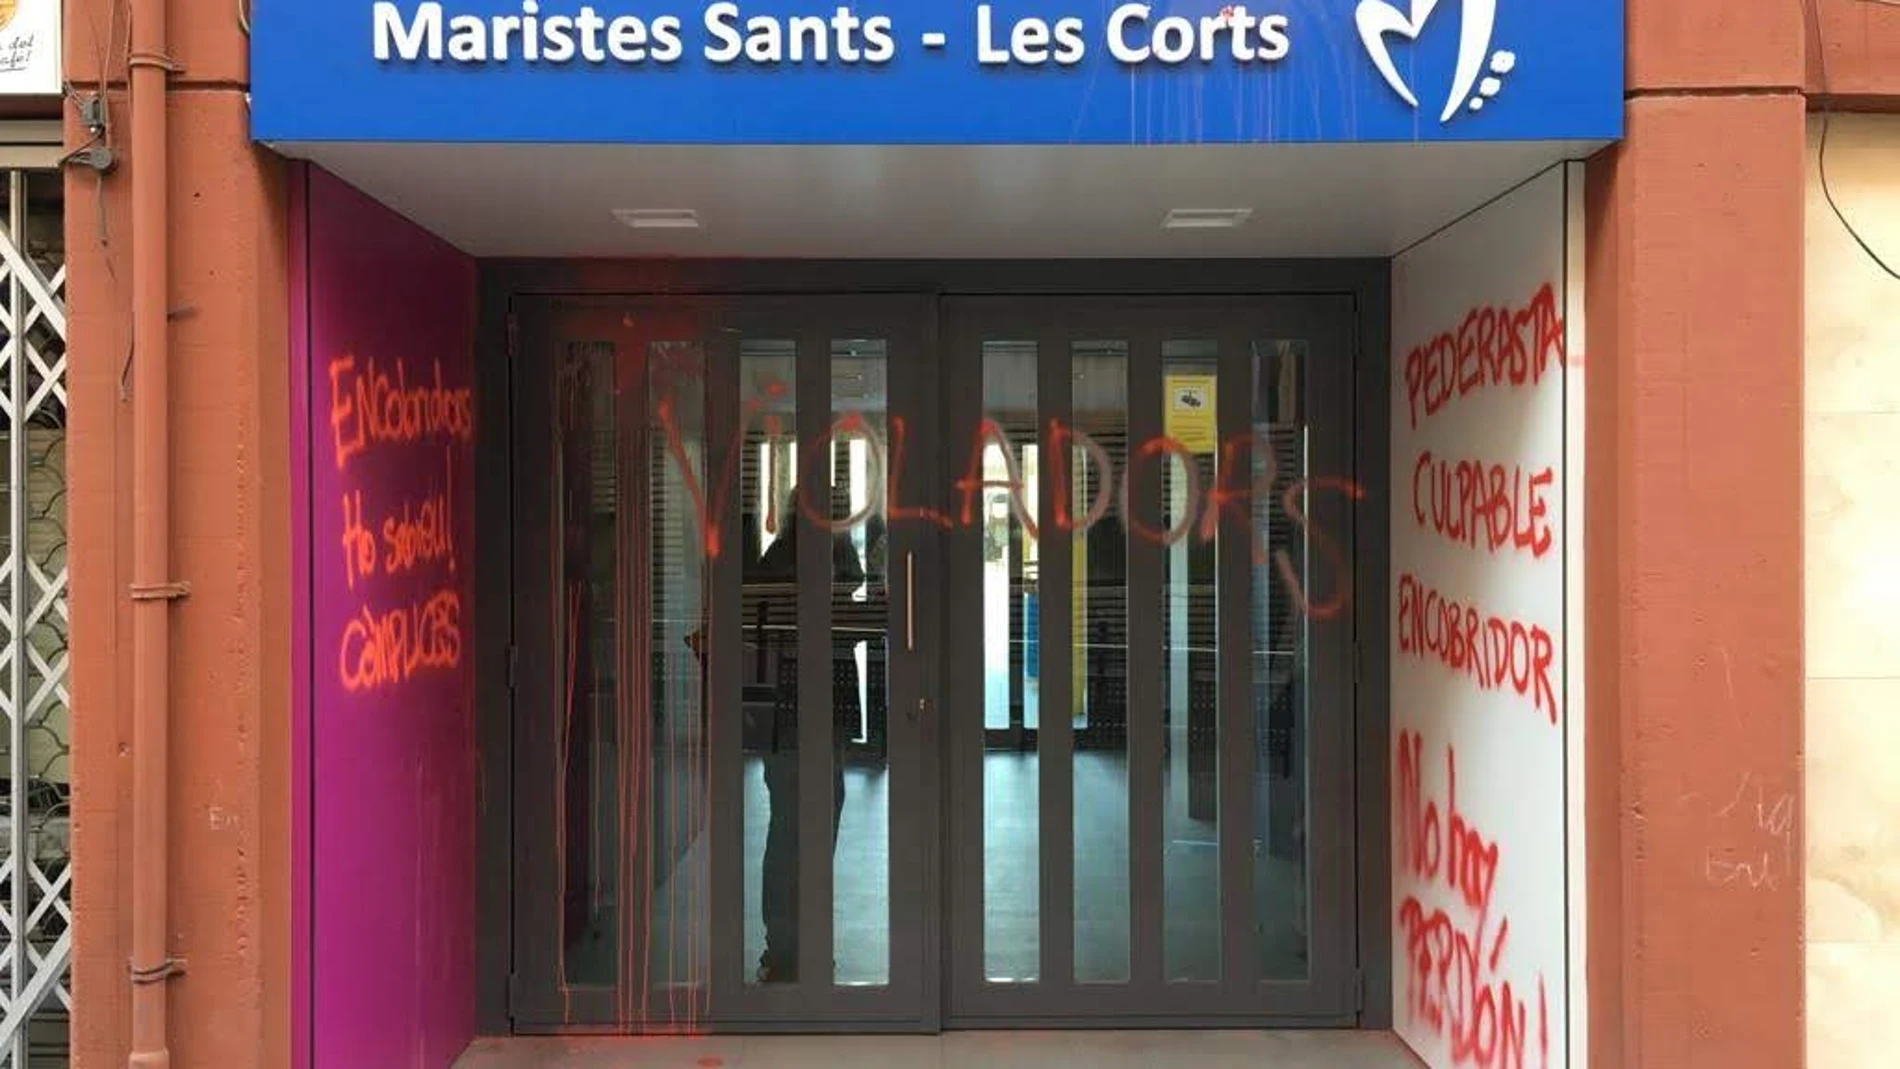 El colegio Maristas de Les Corts se llenó ayer de pintadas